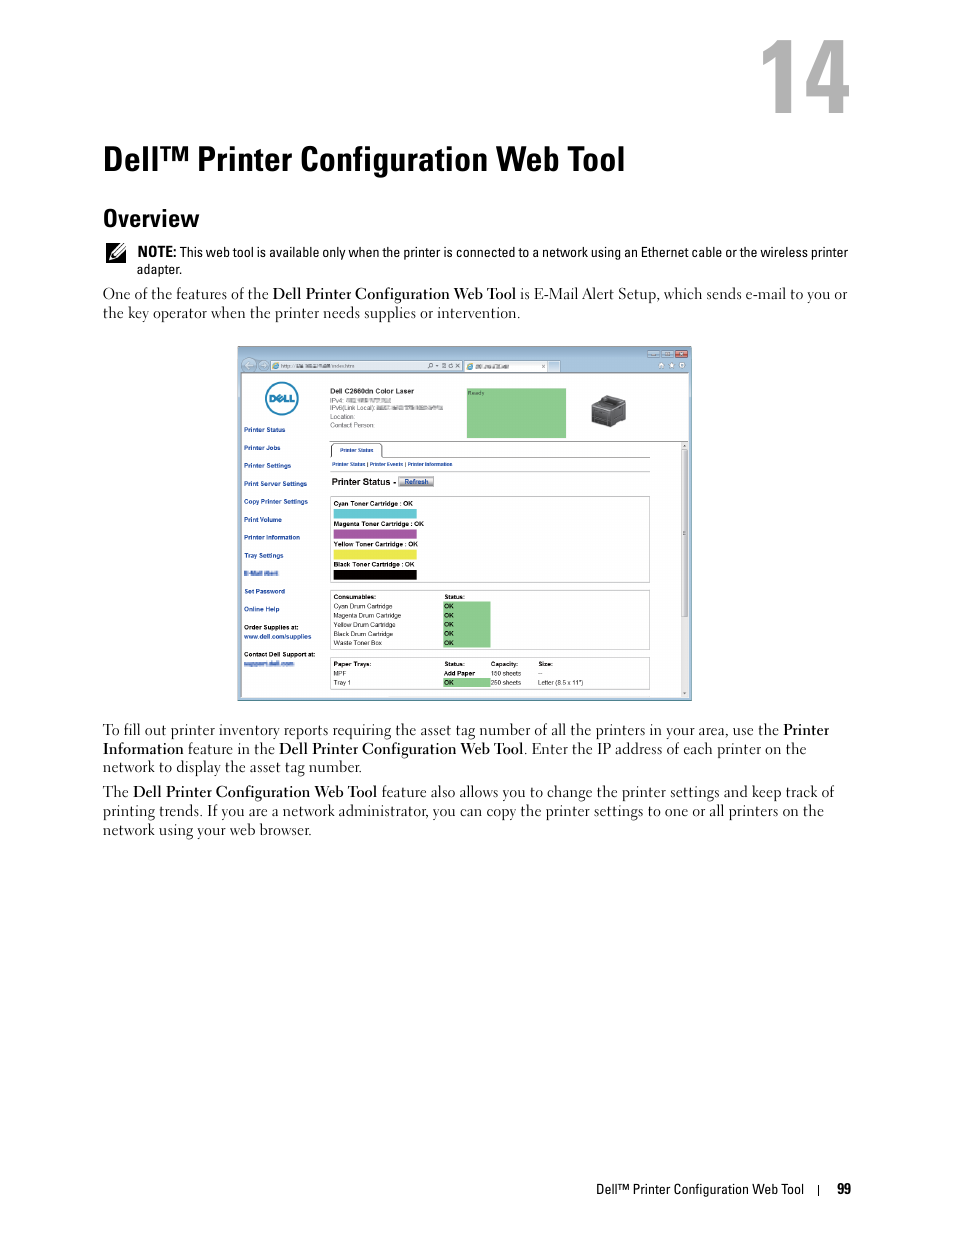 Dell™ printer configuration web tool, Overview, 14 dell™ printer